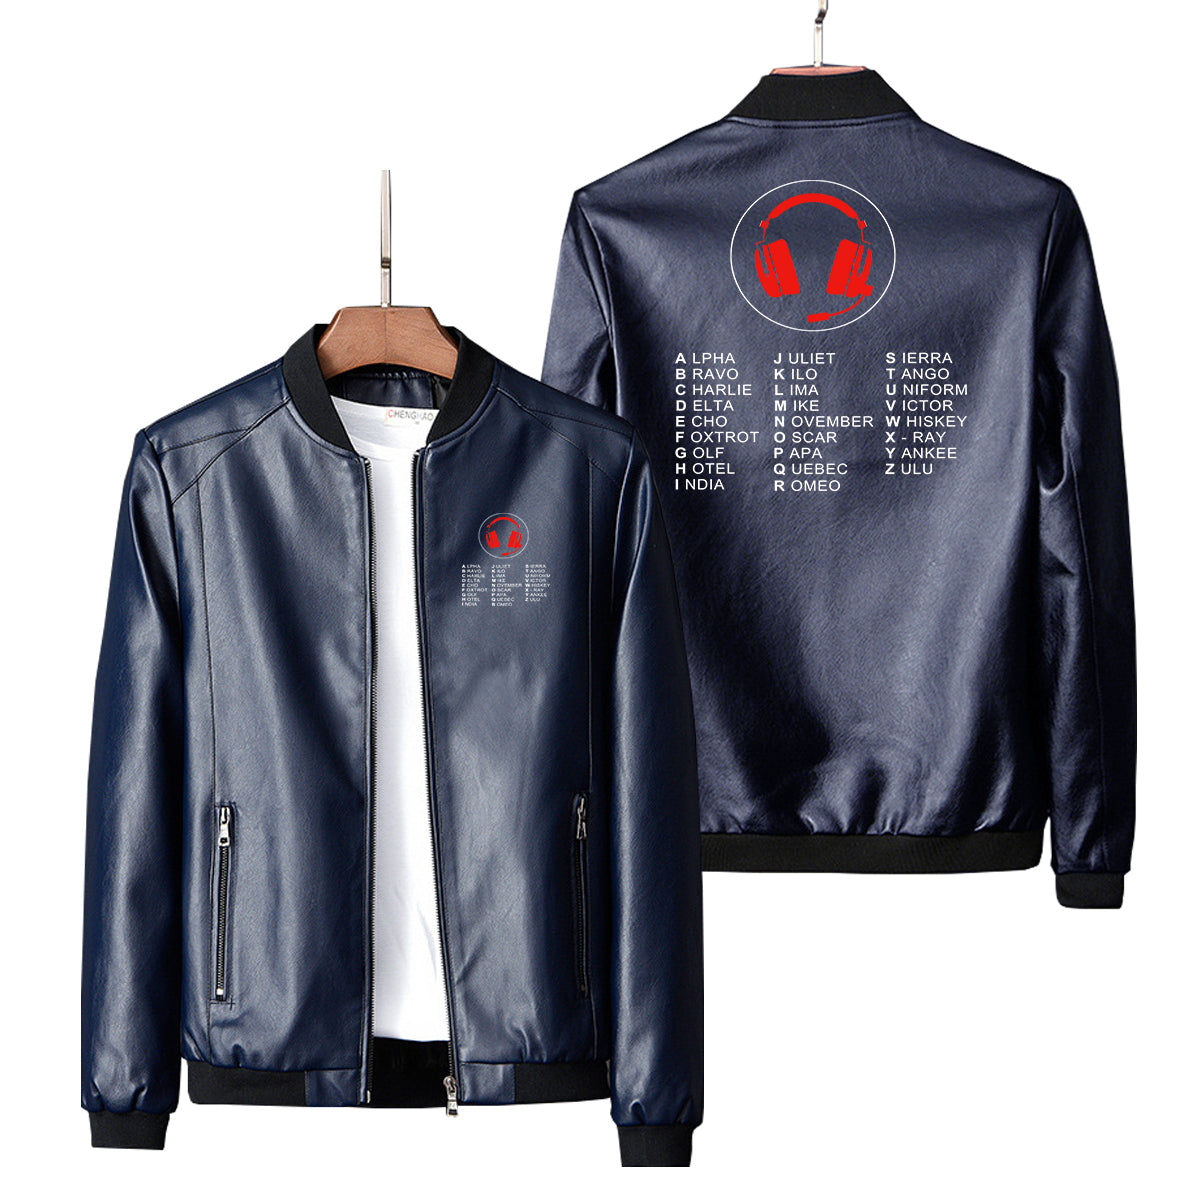 Aviation Alphabet 3 Designed PU Leather Jackets